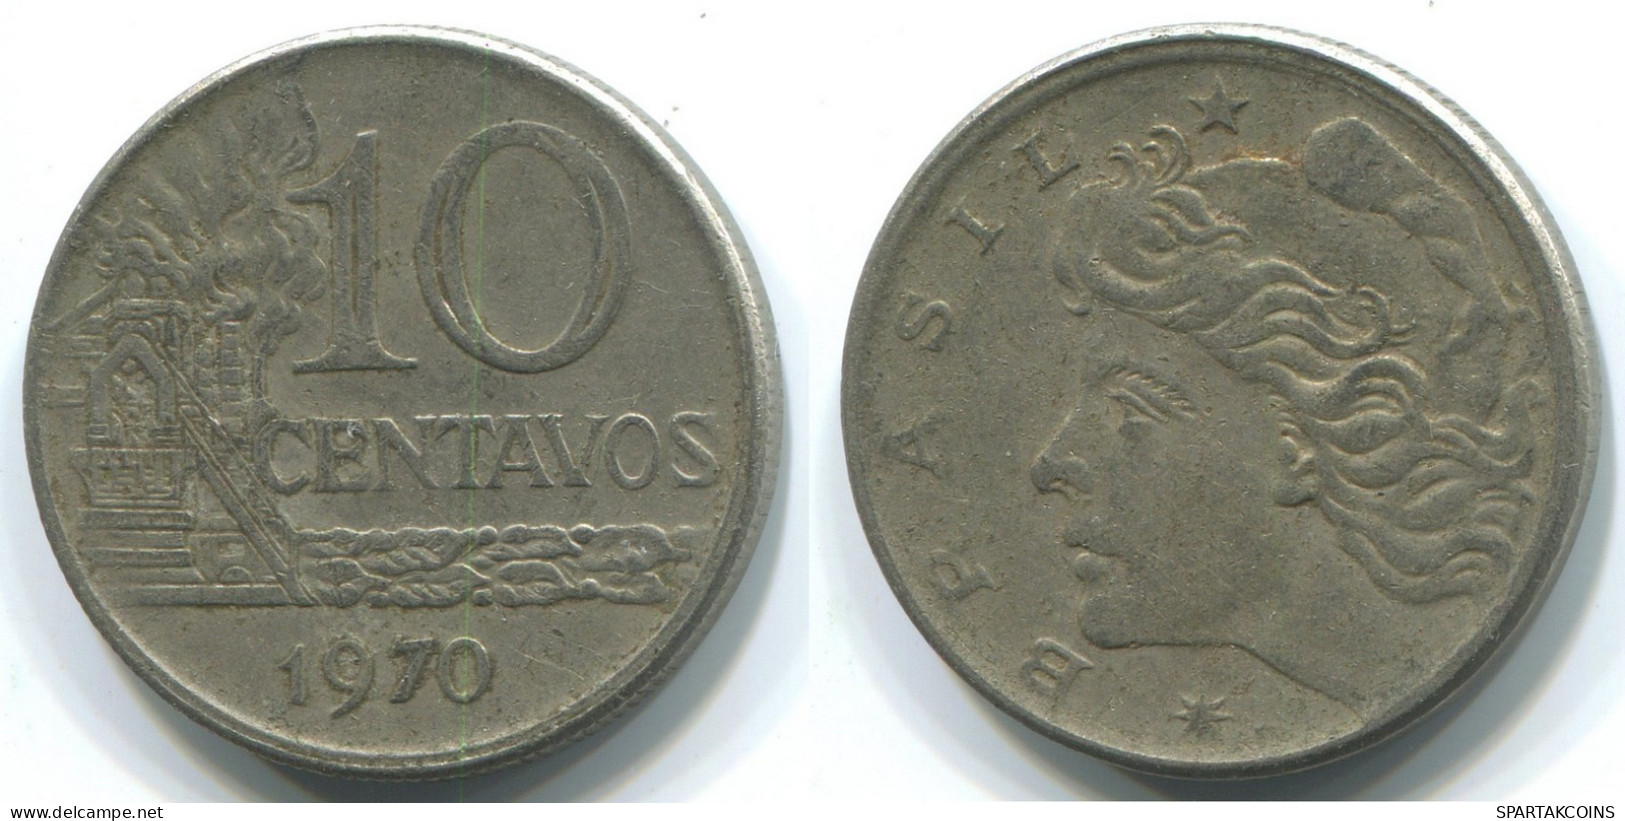 10 CENTAVOS 1970 BBASILIEN BRAZIL Münze #WW1152.D.A - Brasilien